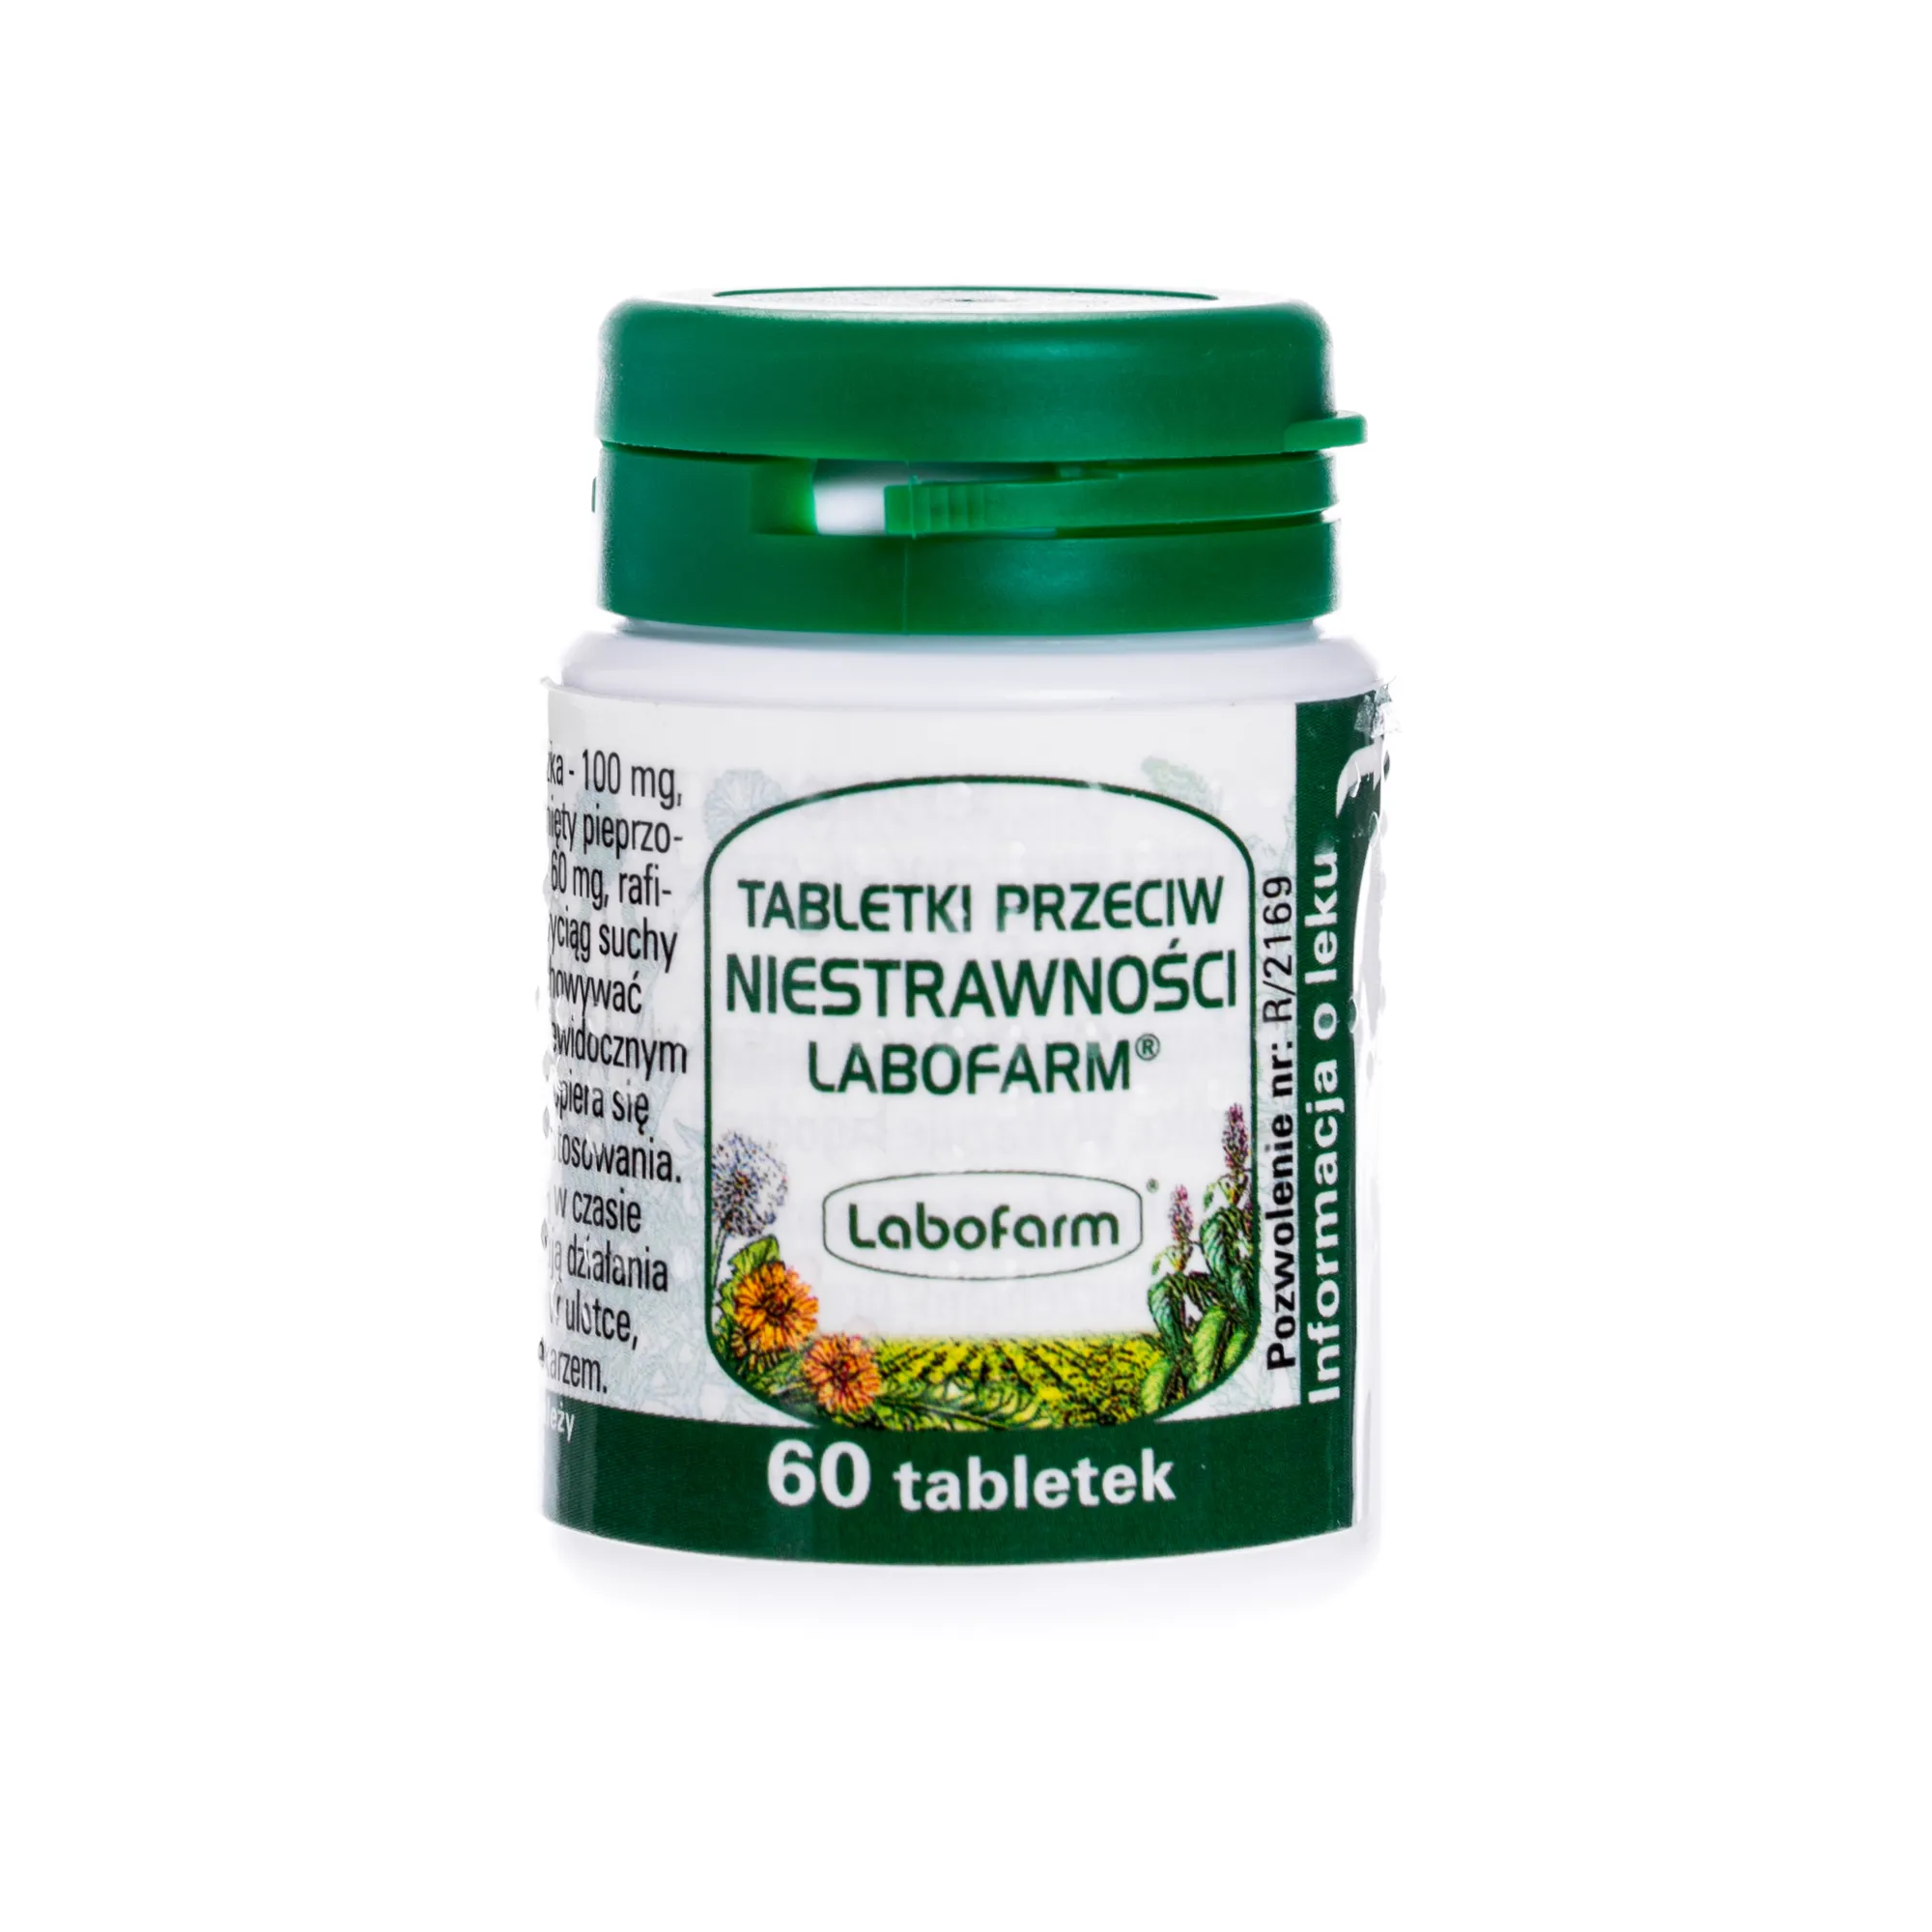 Tabletki przeciw niestrawności Labofarm, 60 tabletek 